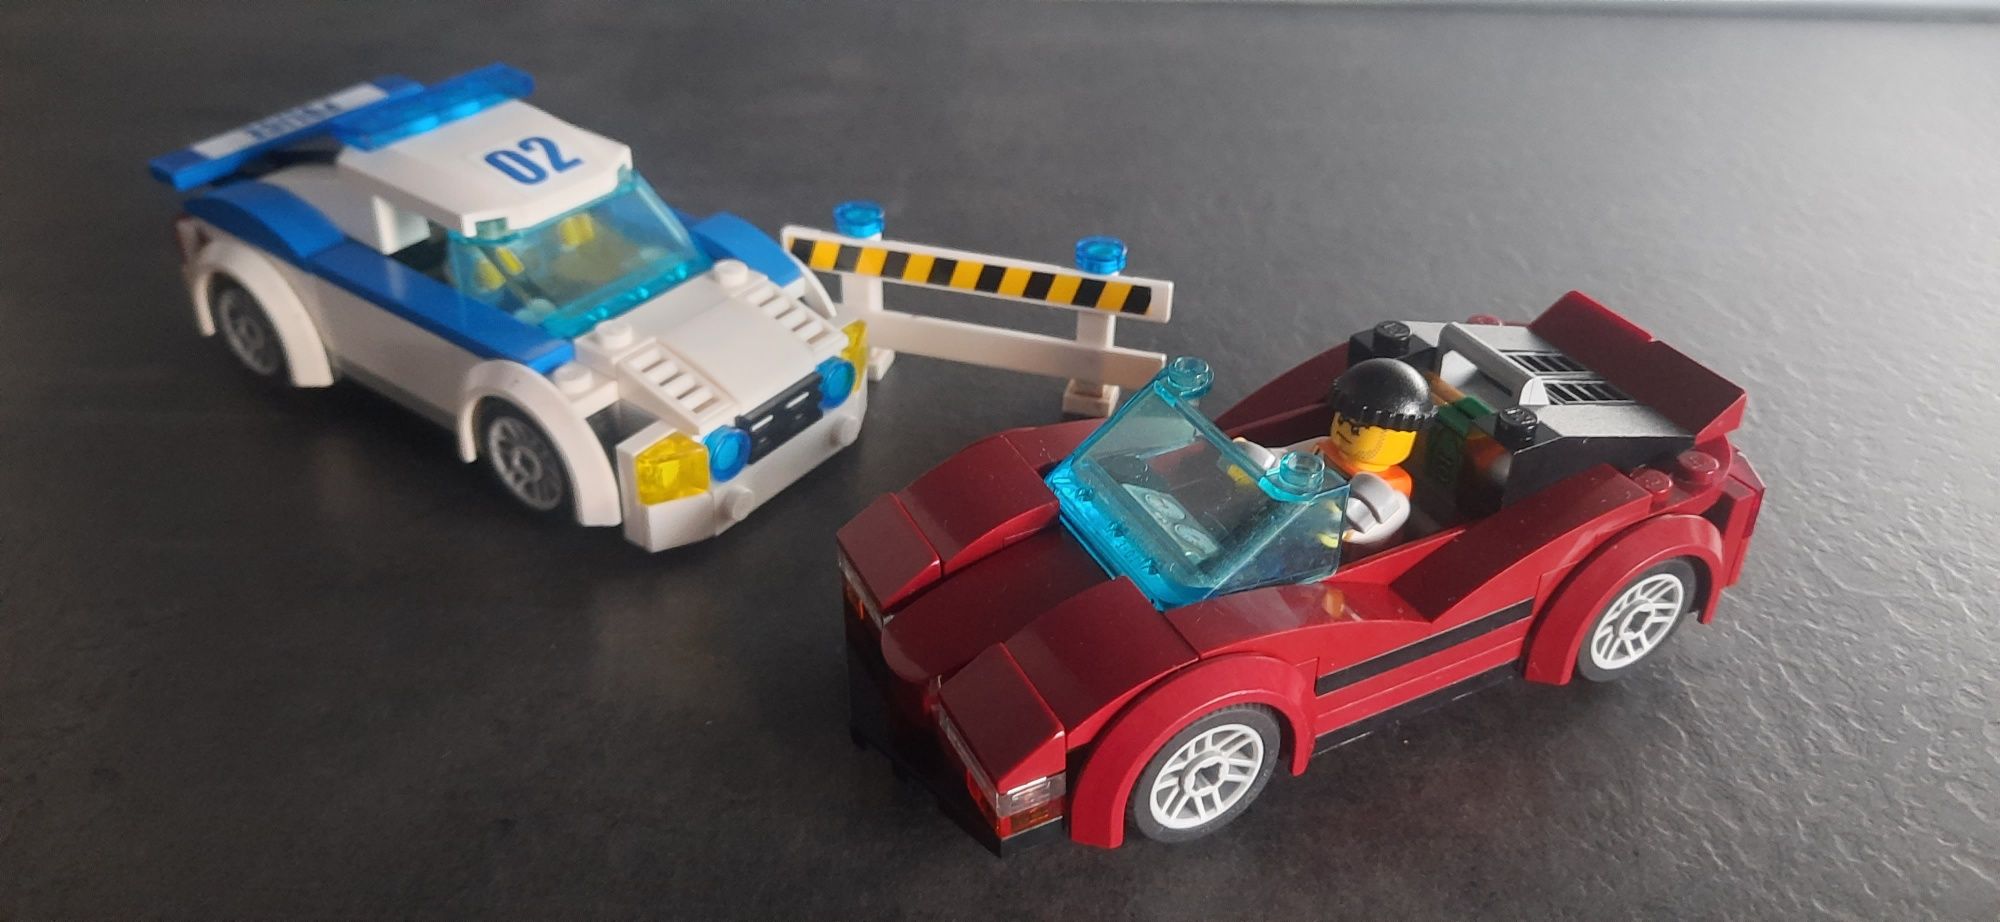 LEGO city 60138 - Szybki pościg